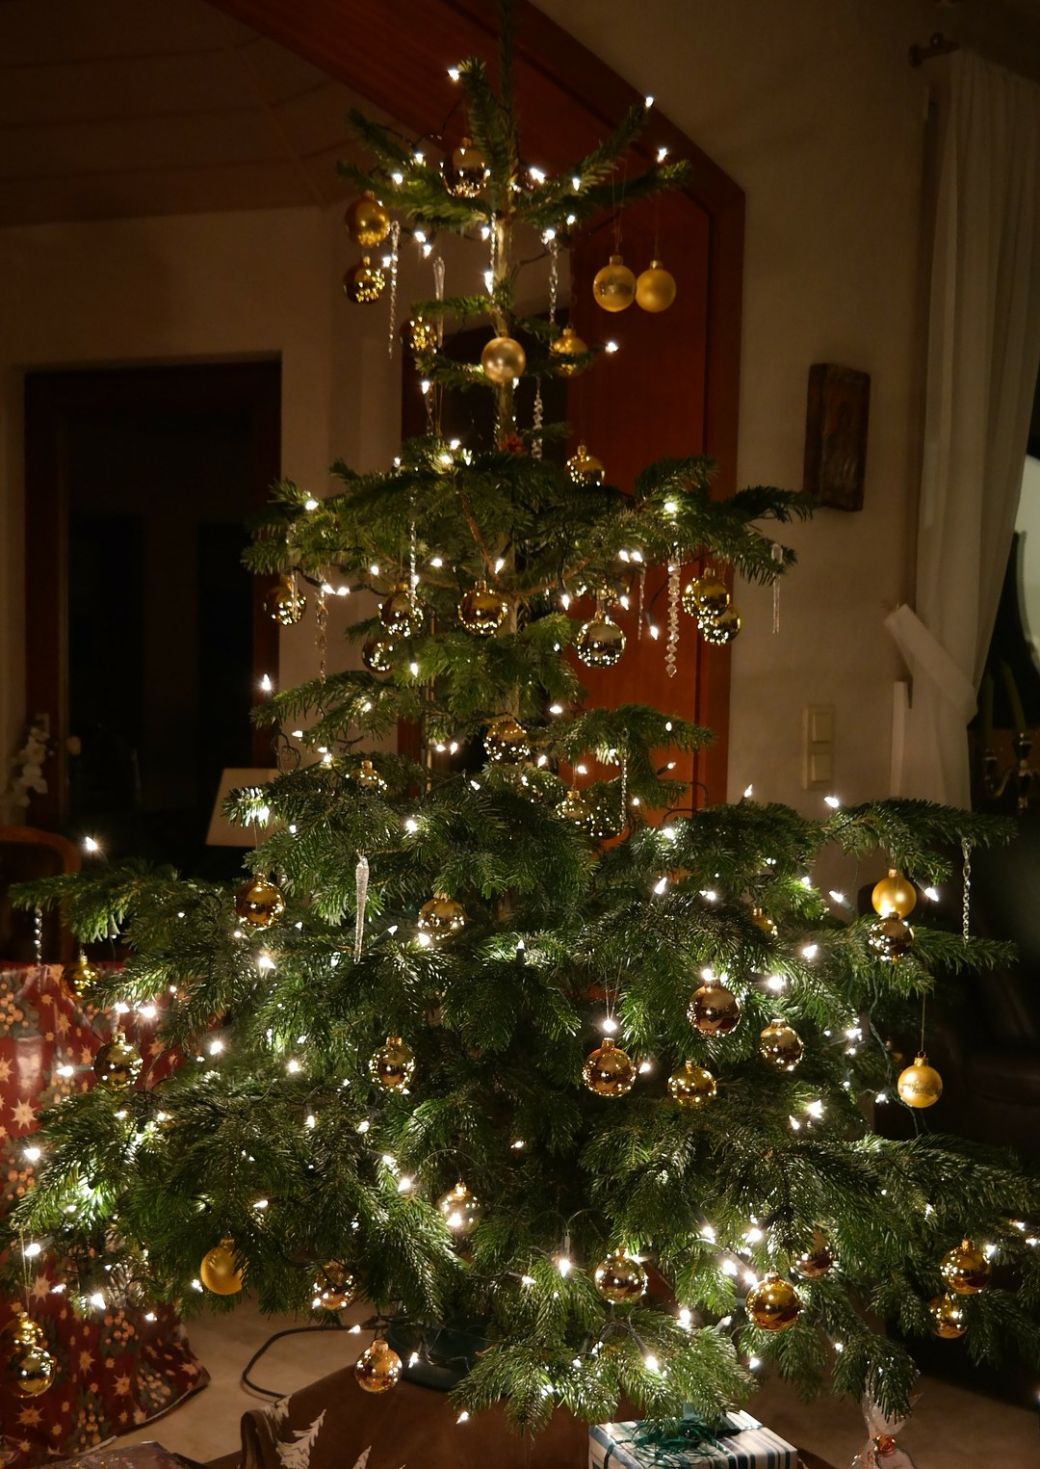 Kerstboom met lichtjes en versiering en cadeautjes op de grond